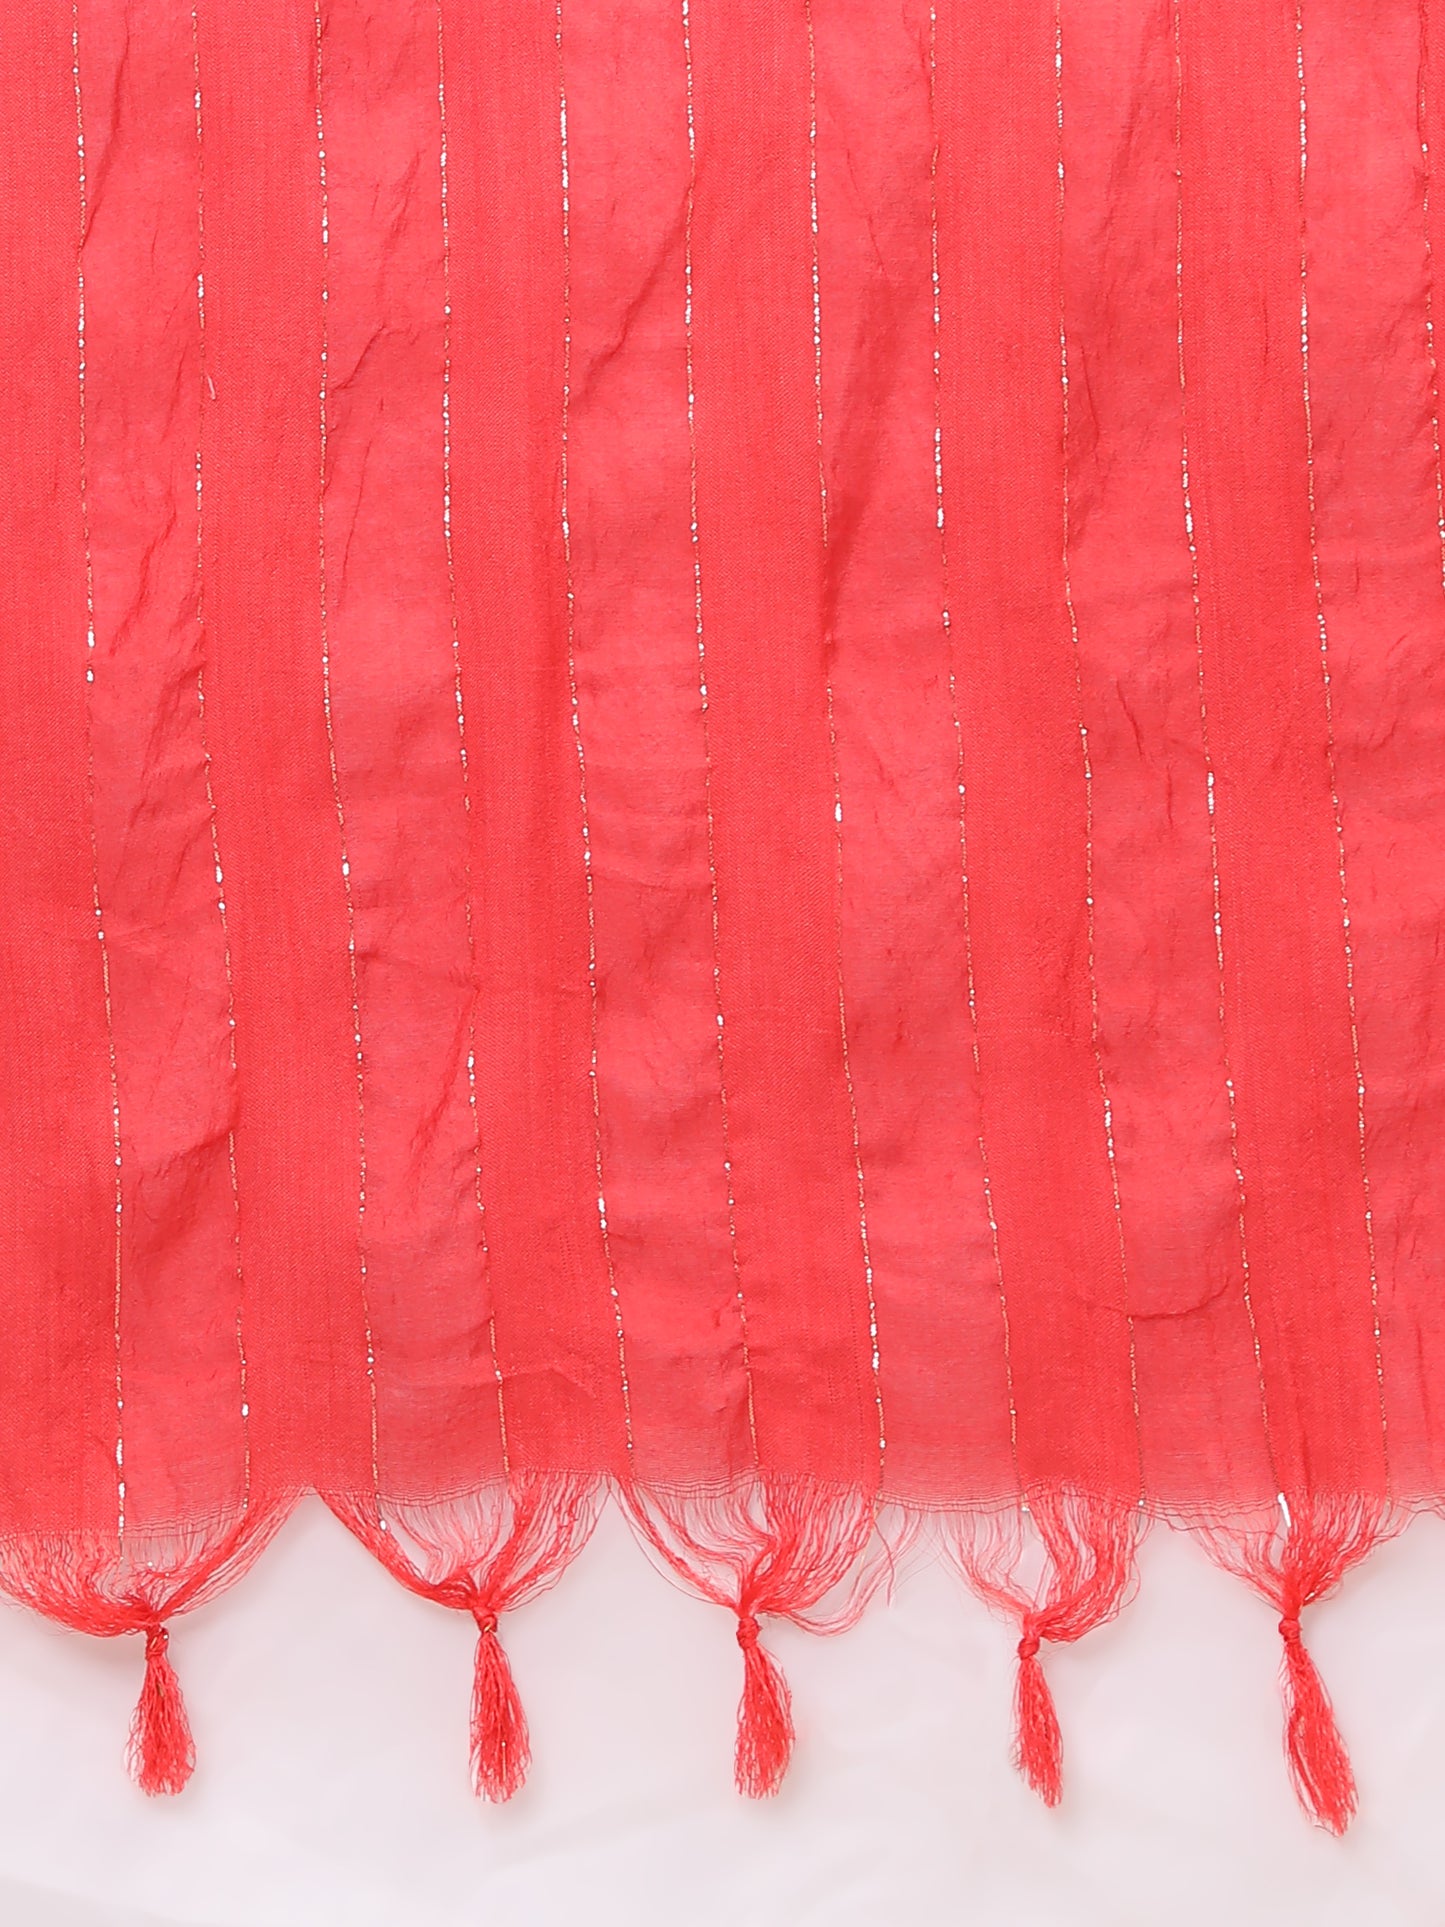 Pink Embroidered Straight Cotton Stitched Kurta Set